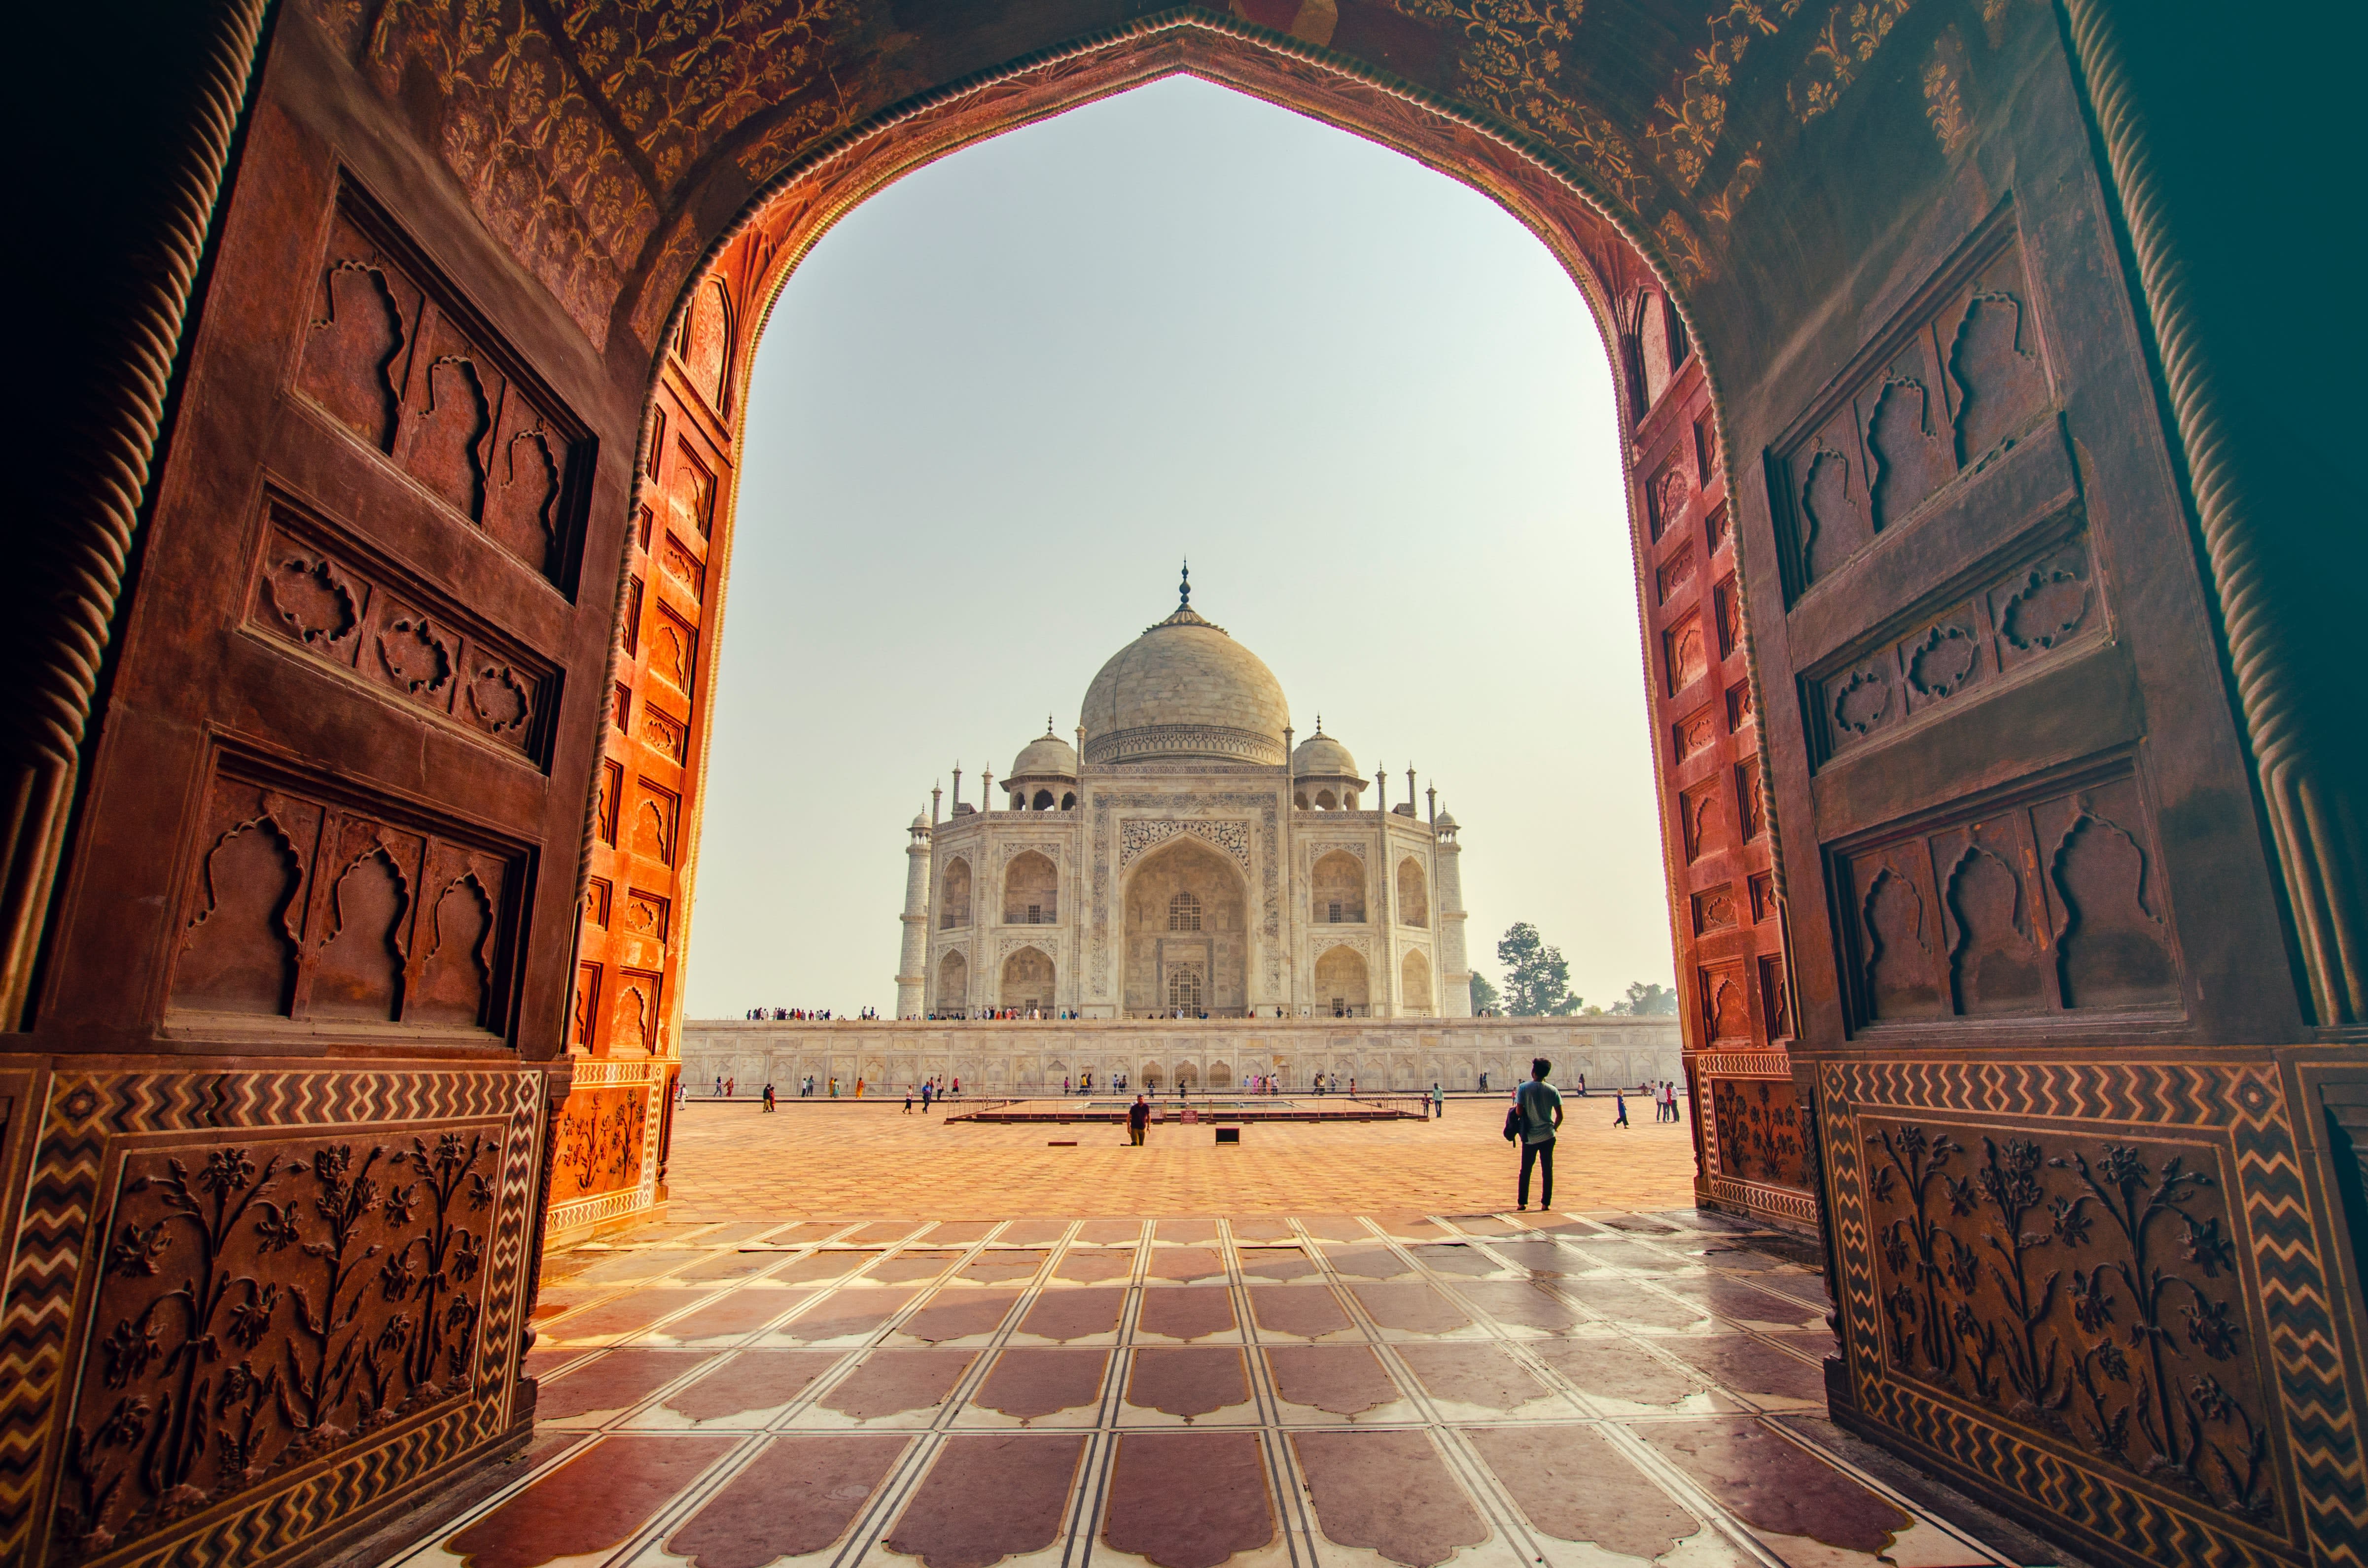 Taj Mahal en inde